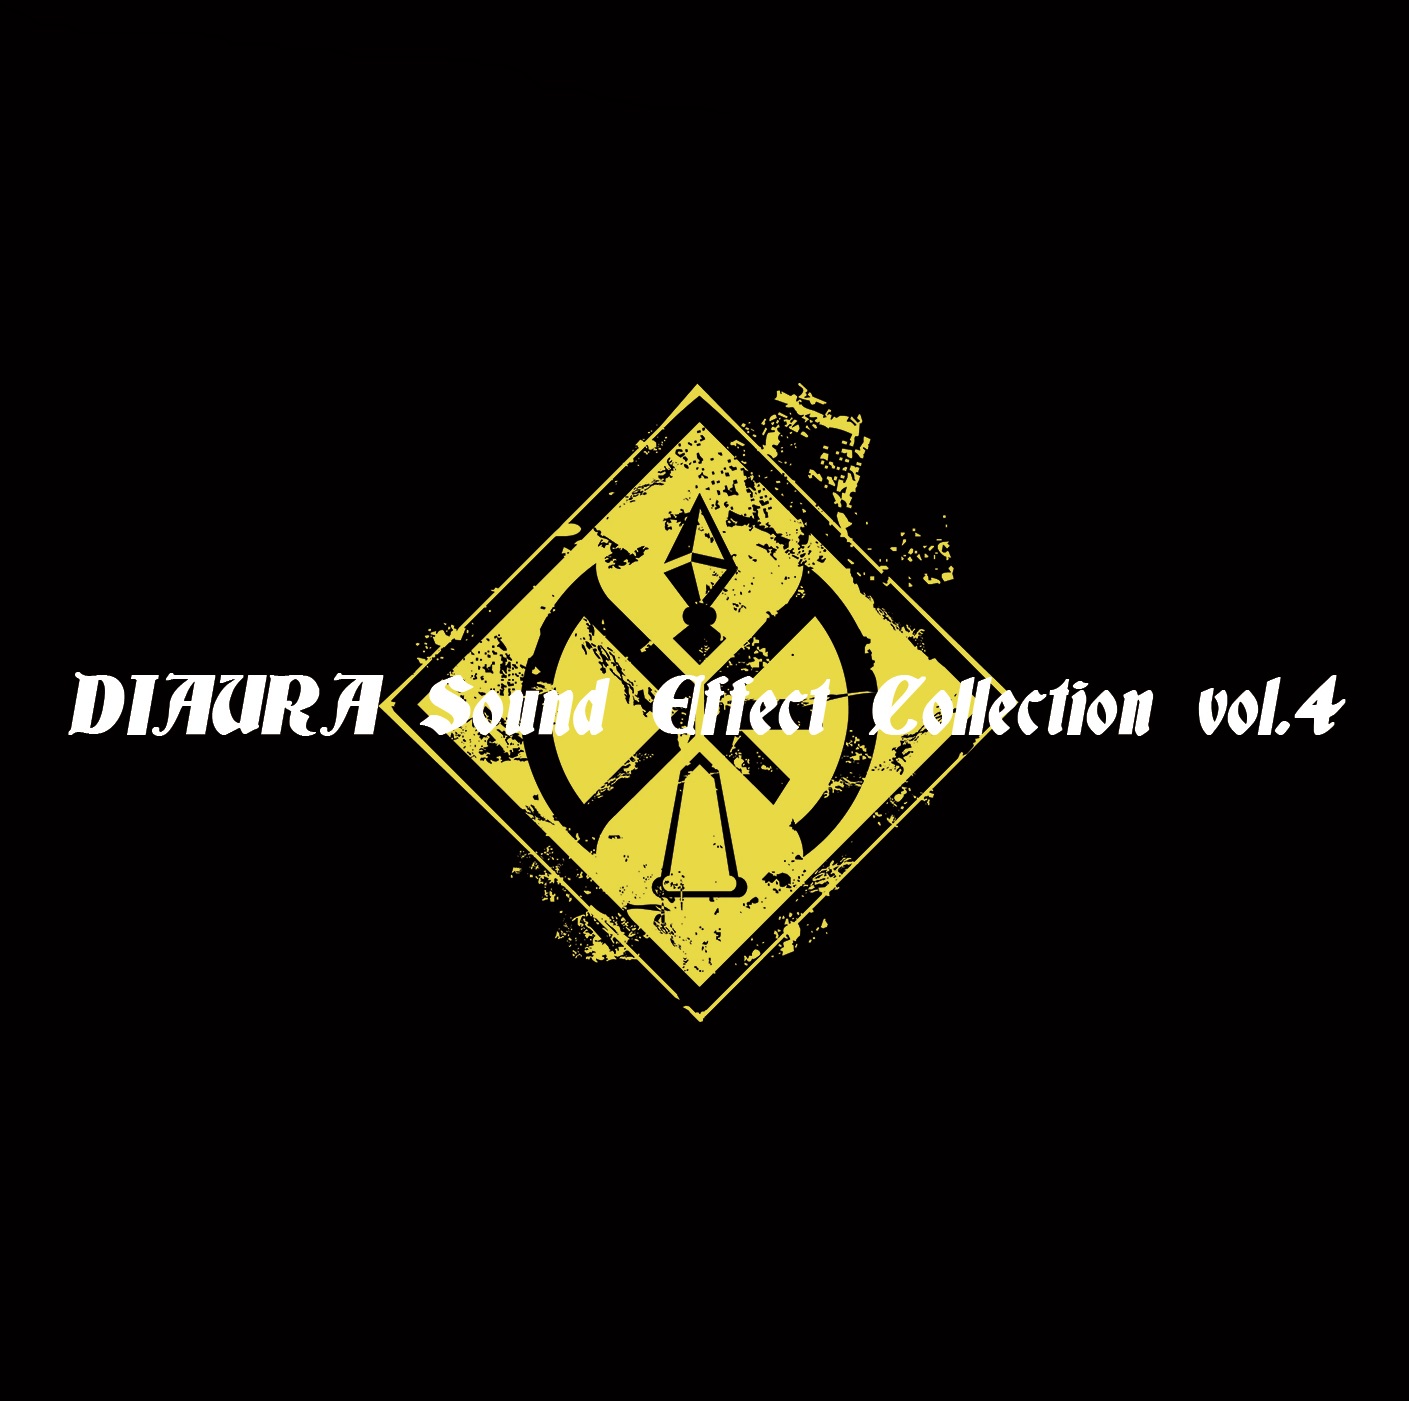 ディオーラ の CD DIAURA Sound Effect Collection vol.4